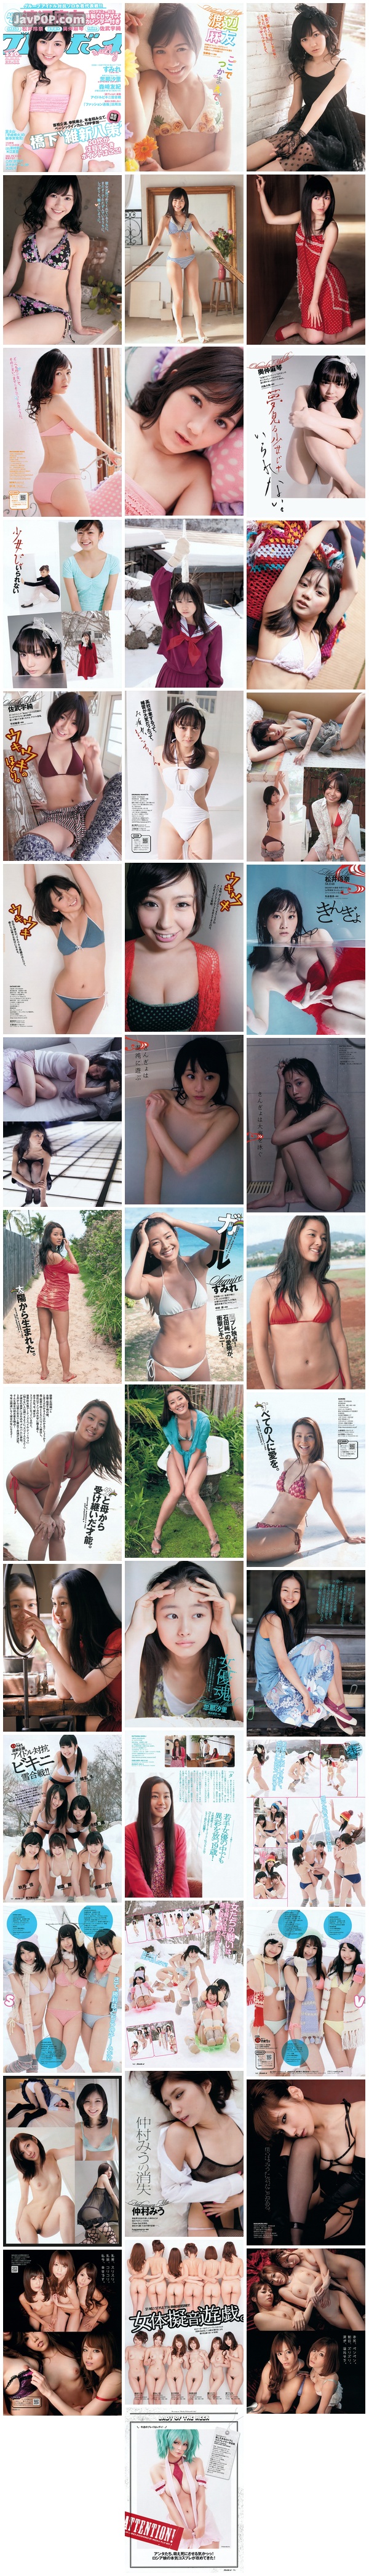 [Weekly_Playboy_Magazine] 2012 No.11 渡辺麻友 佐武宇綺 松井玲奈 すみれ 仲村みう